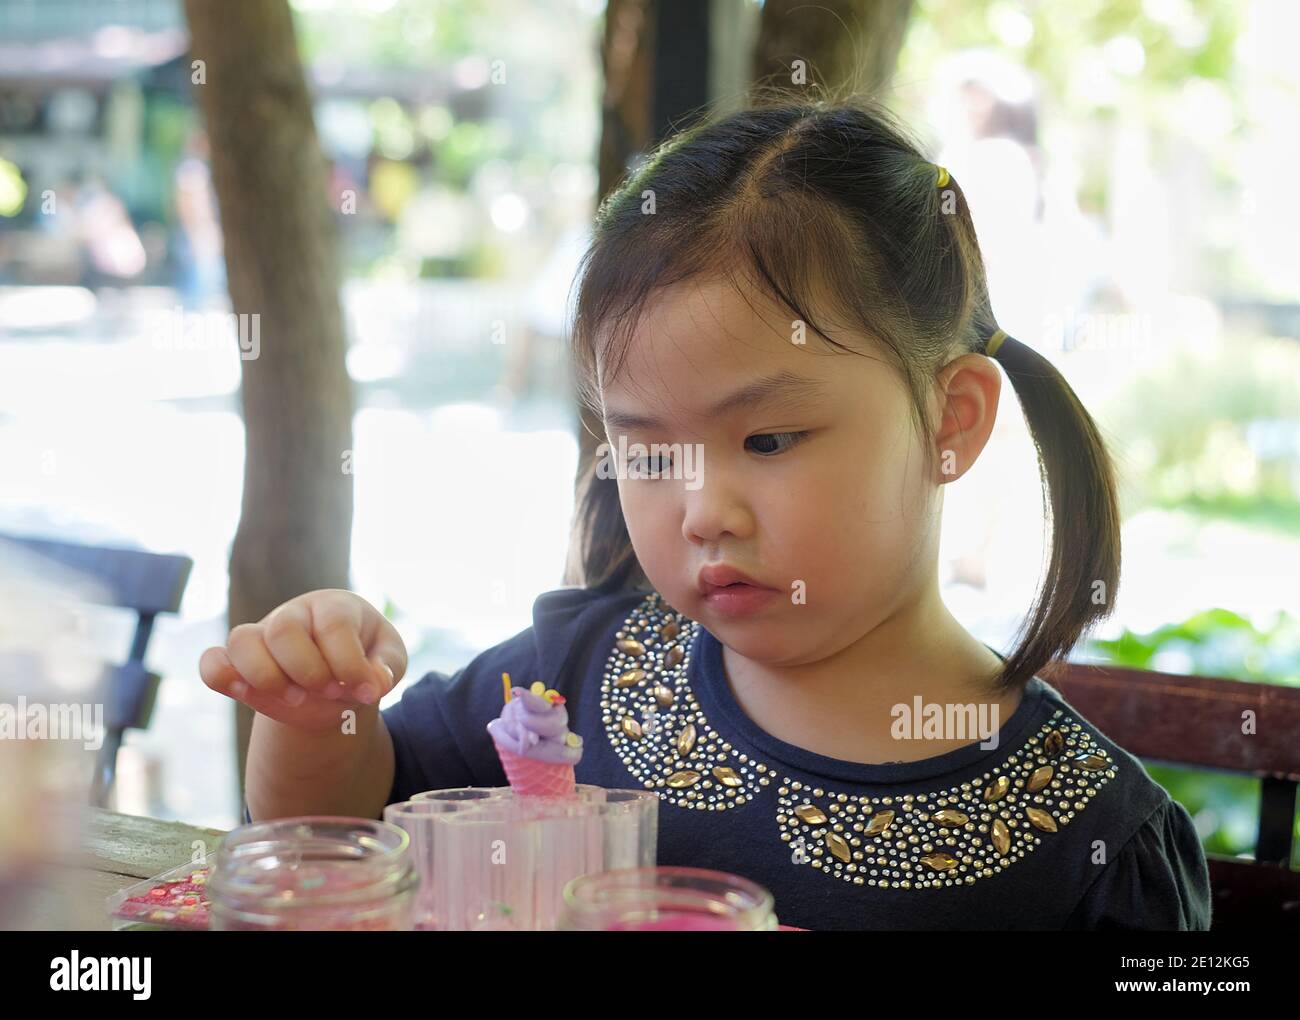 Une jeune fille asiatique mignonne se concentre sur la décoration de sa crème glacée en forme de cône jouer la pâte, ajoutant des saupoudrées colorées comme garniture. Banque D'Images